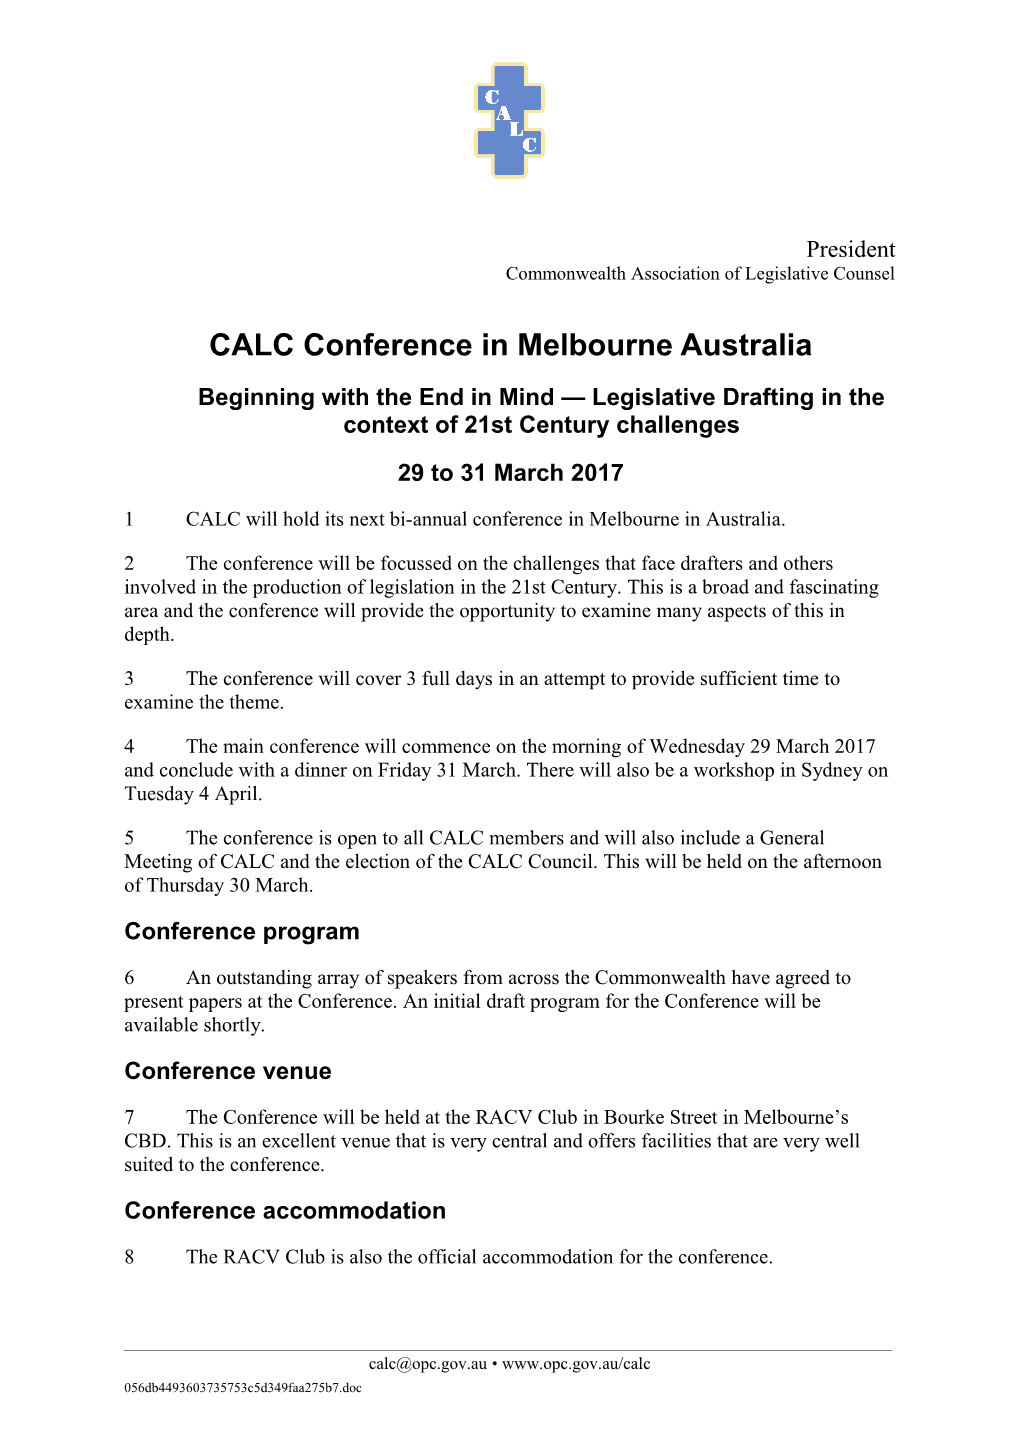 CALC Conference in Melbourne Australia